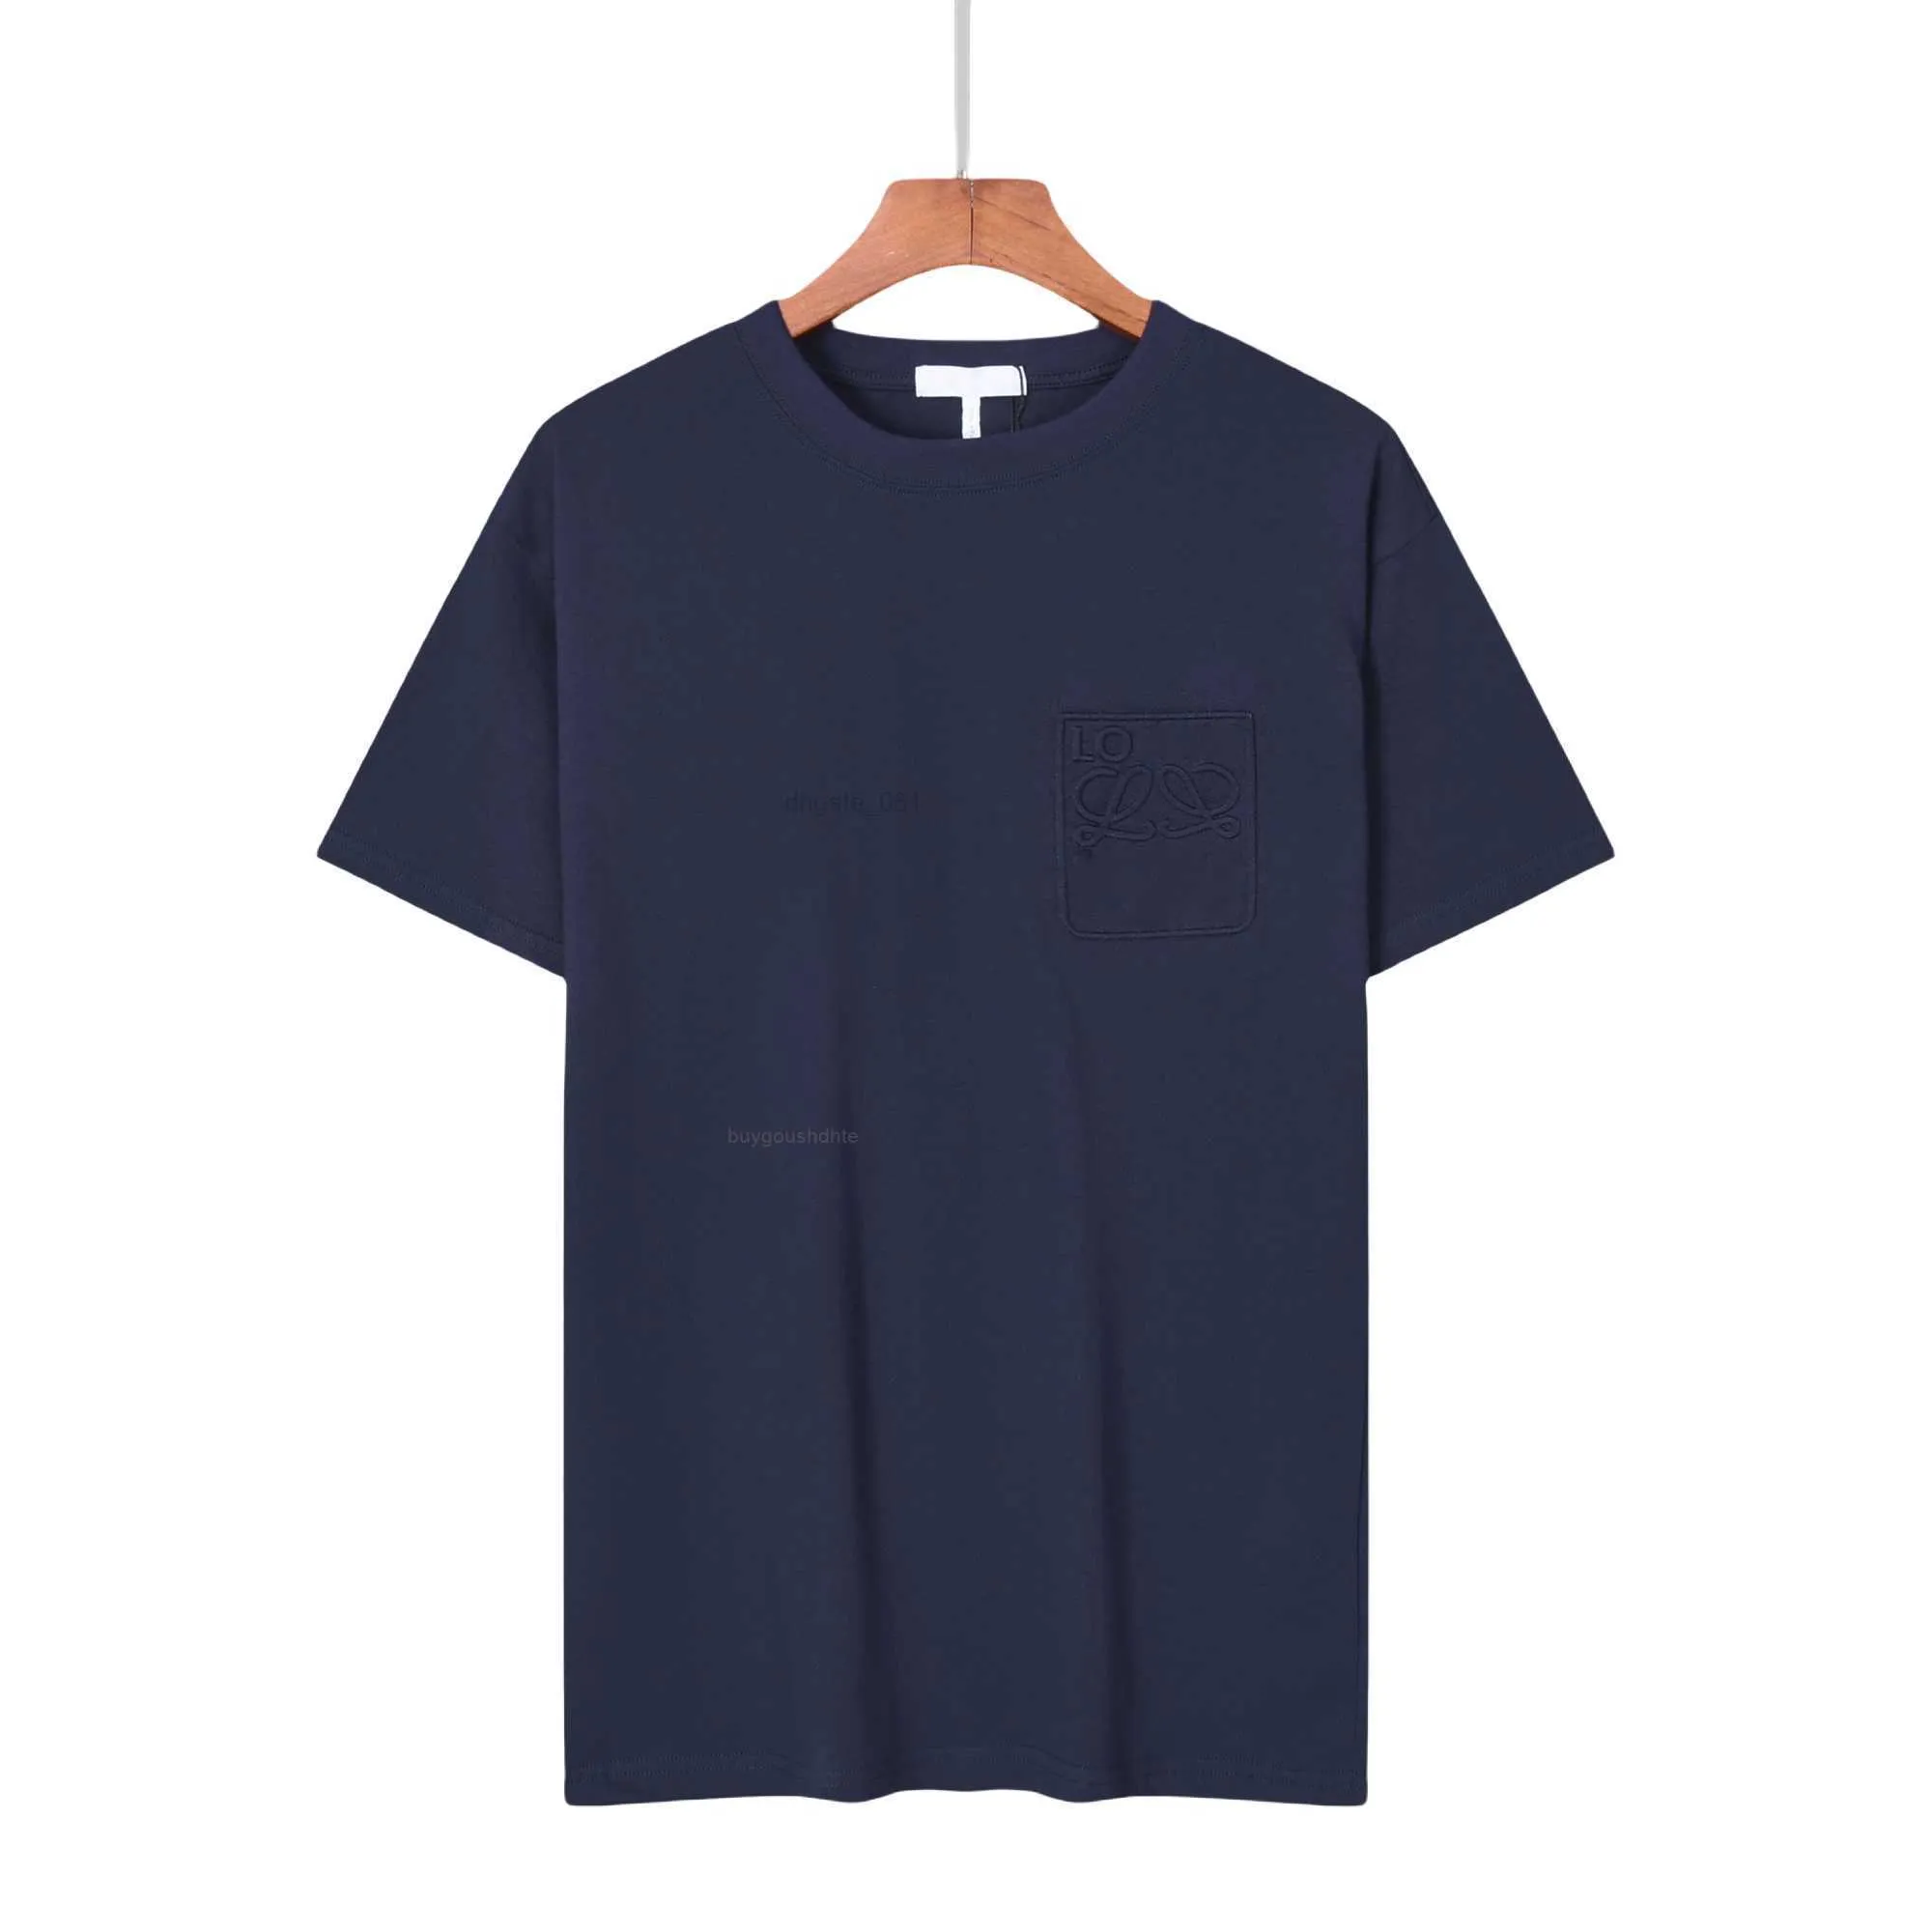 Verão 3d alívio t-shirts masculino e feminino algodão carta sólida manga curta em torno do pescoço casual camiseta ydre